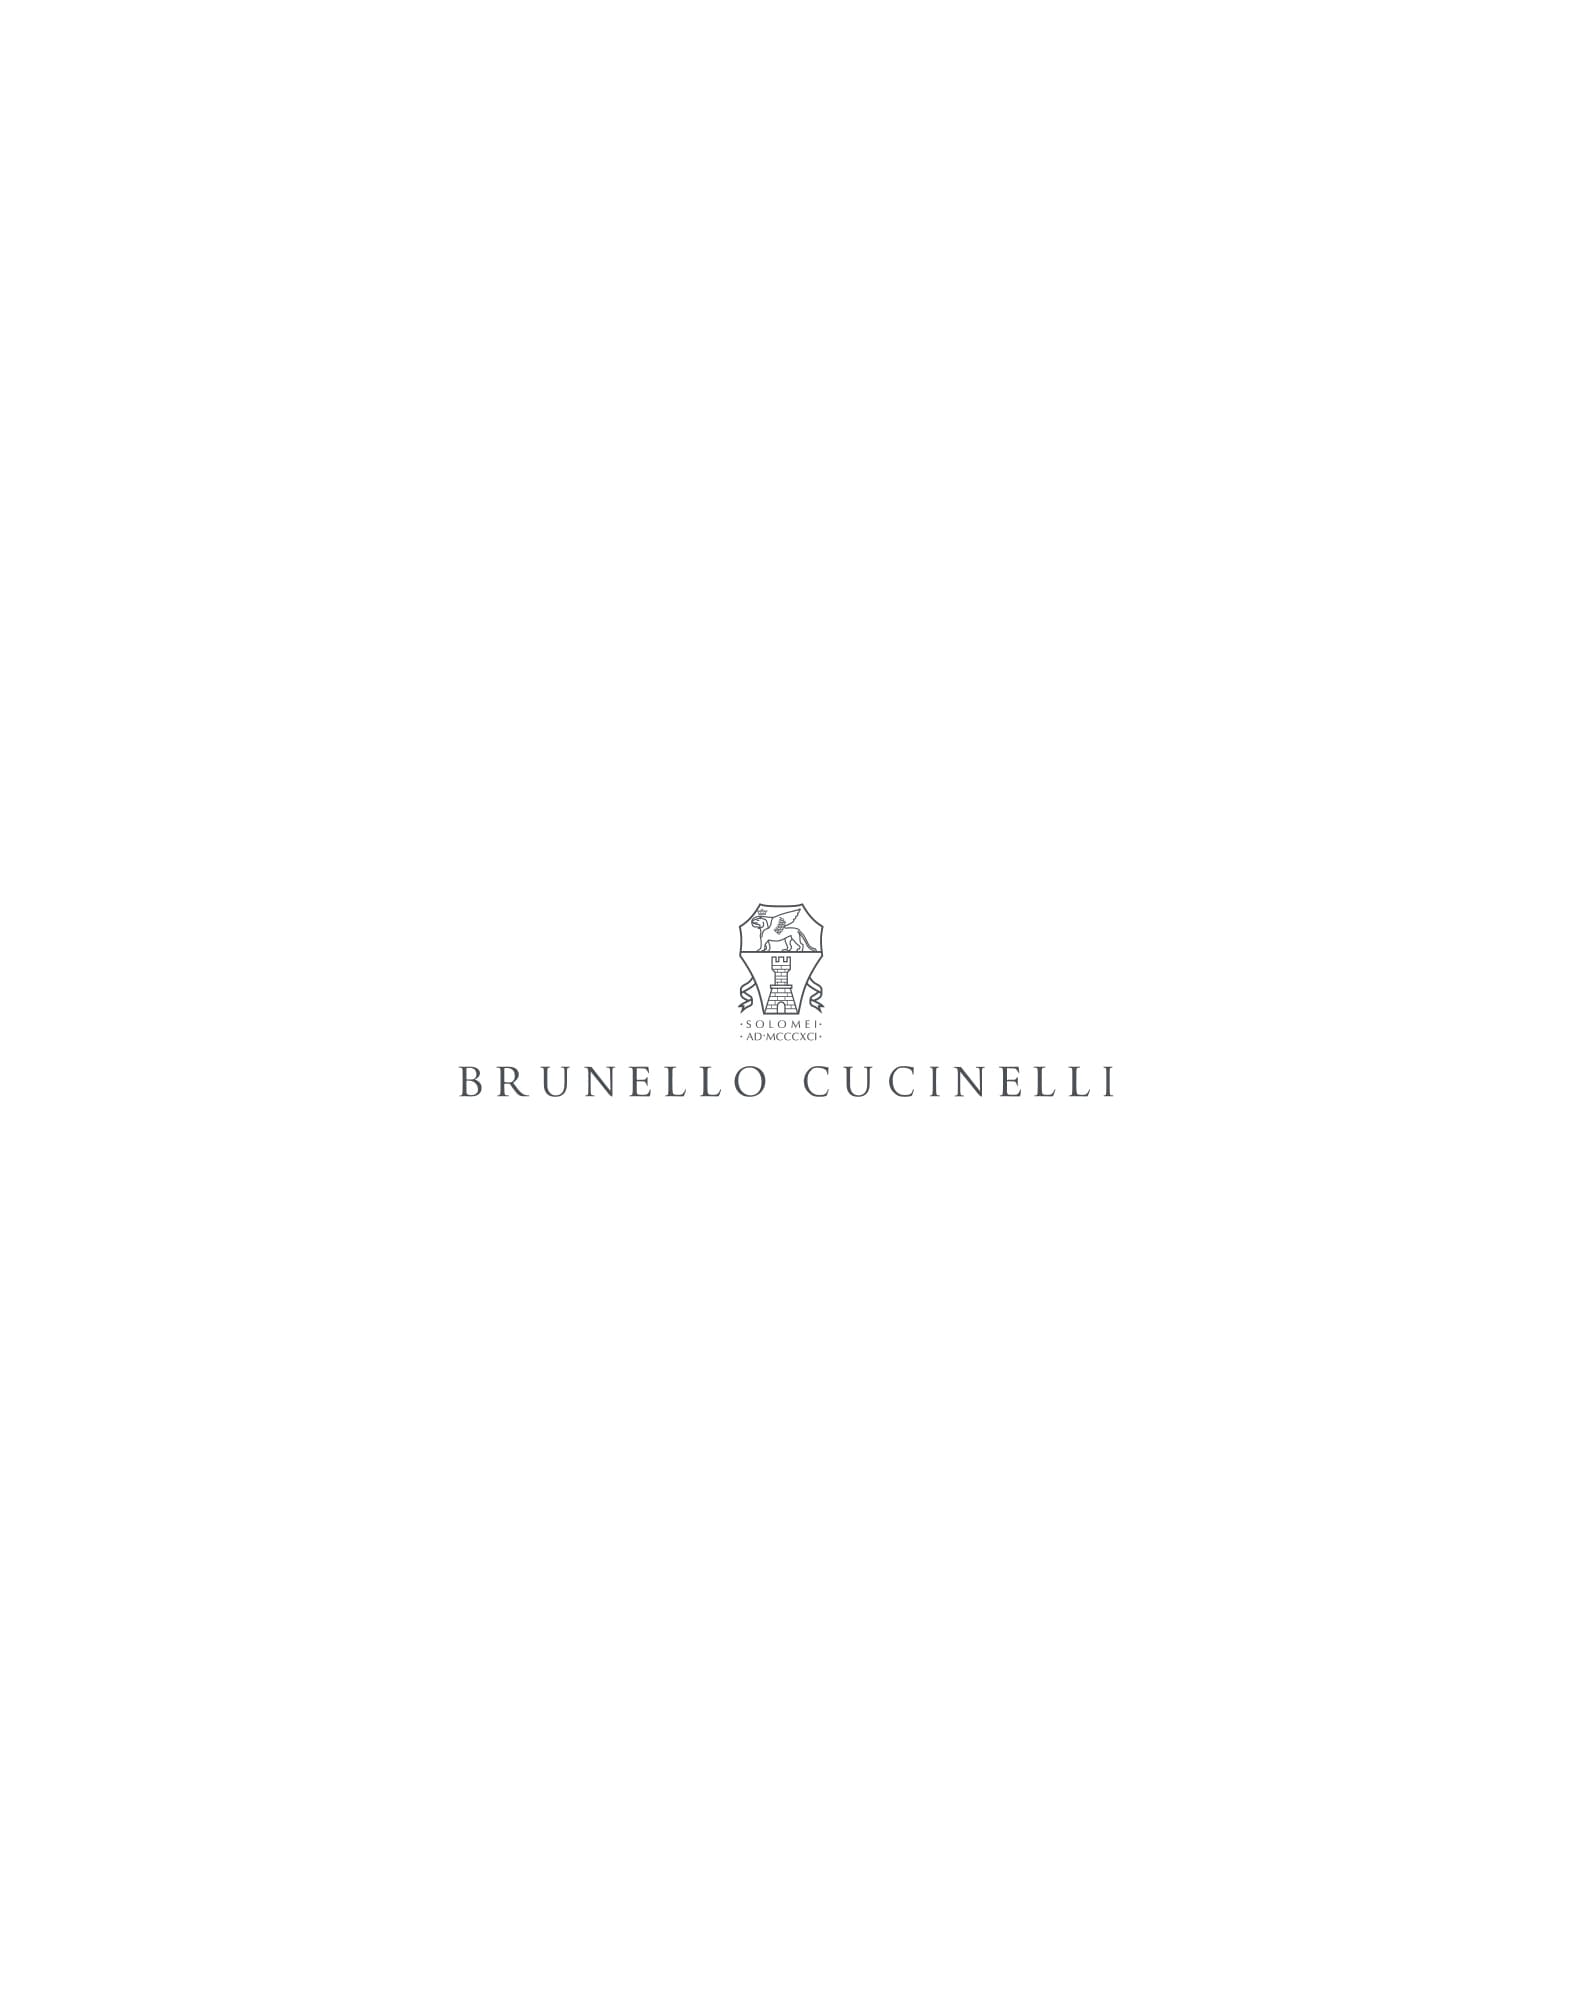 https://shop.brunellocucinelli.com/on/demandware.static/Sites-bc-eu-Site/-/default/dw72ebf1a5/images/pv.png